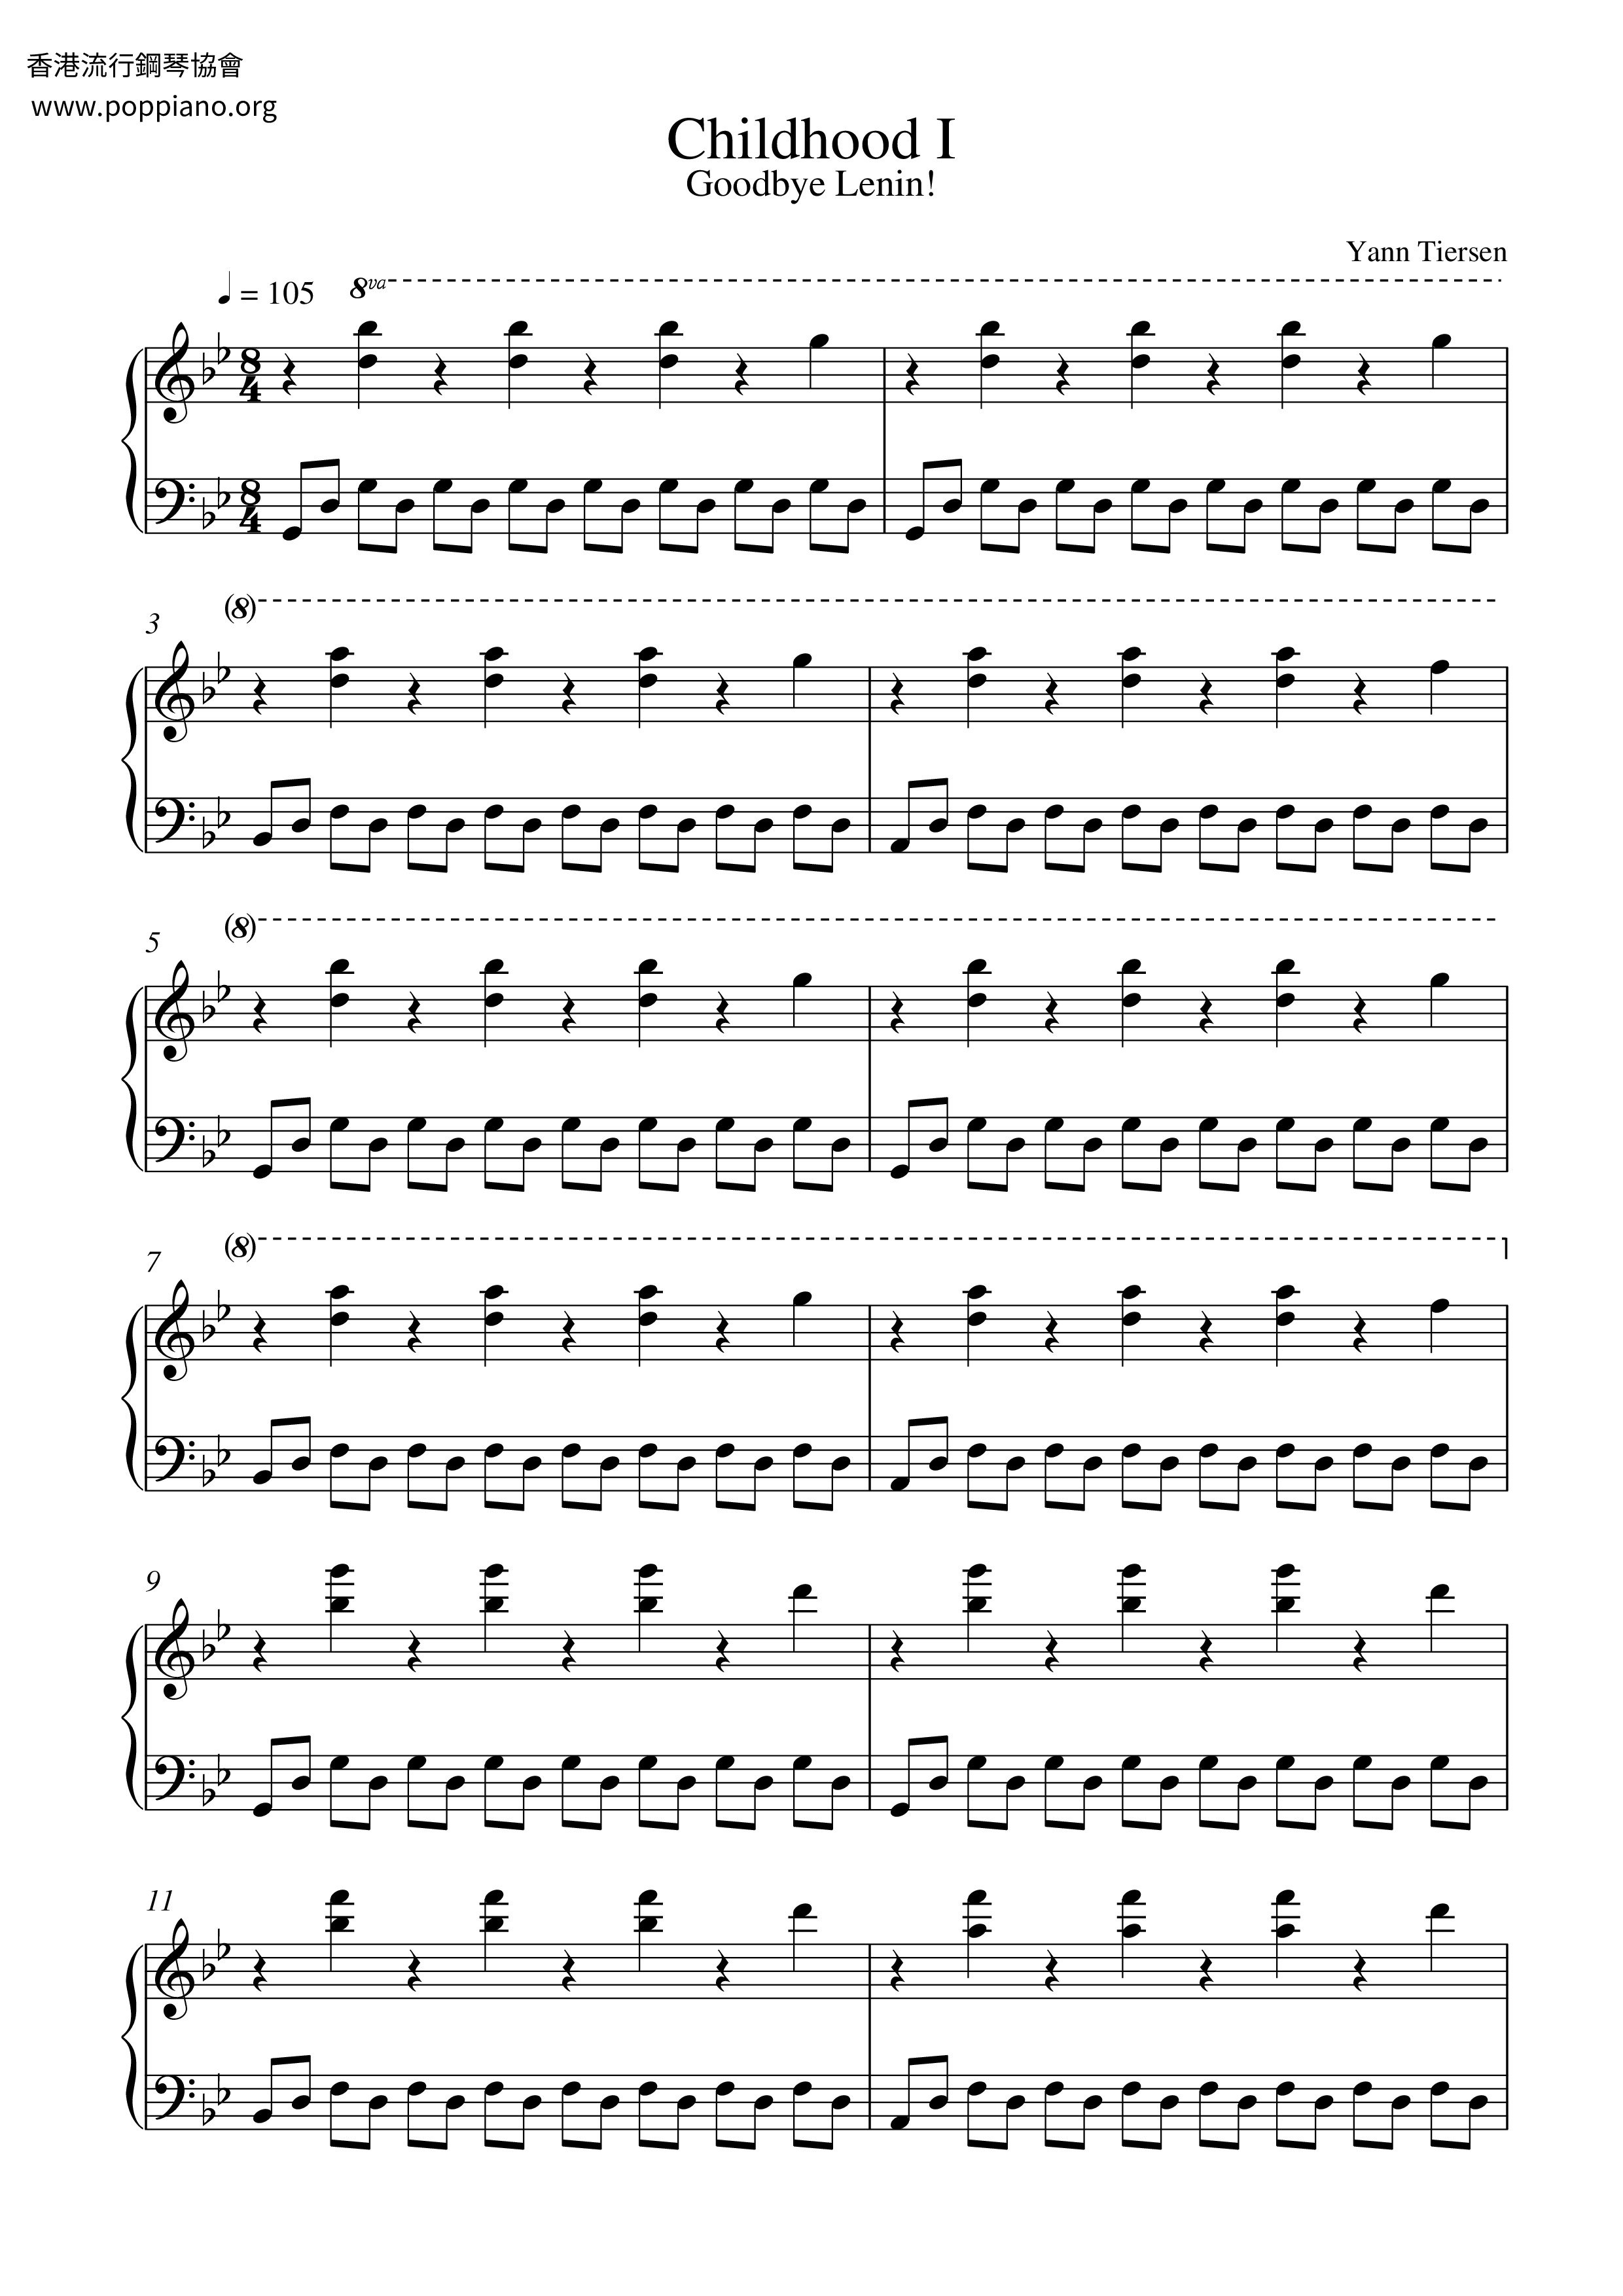 Yann Tiersen Childhood I Sheet Music Pdf Free Score Download Yann tiersen sheet music to download for free. www poppiano org